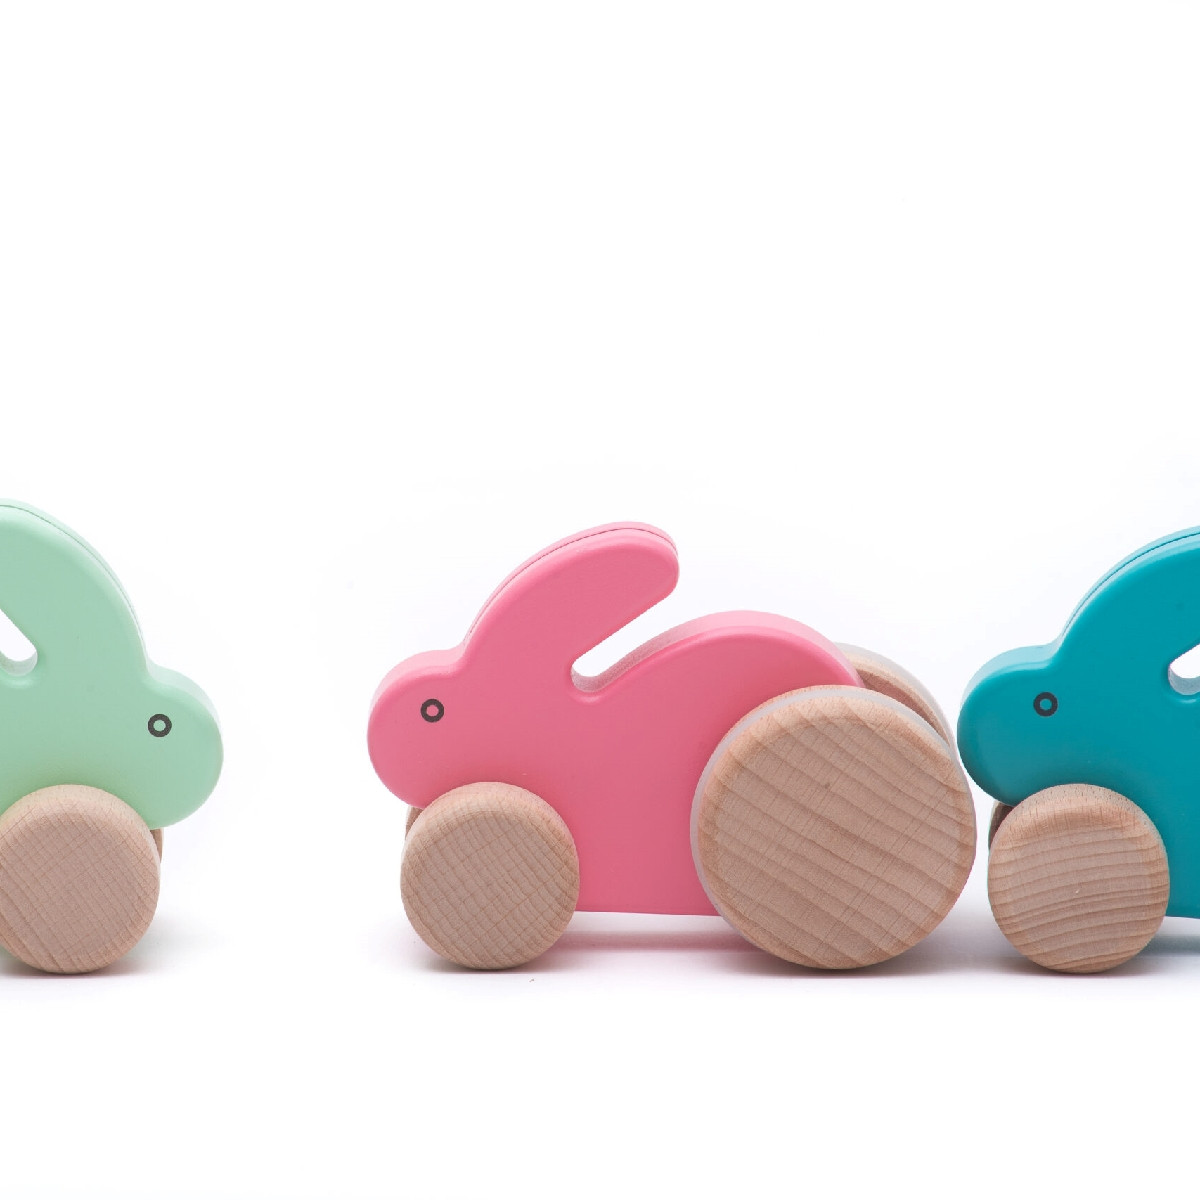 Petit lapin en bois holztiger - jouet en bois pour enfant